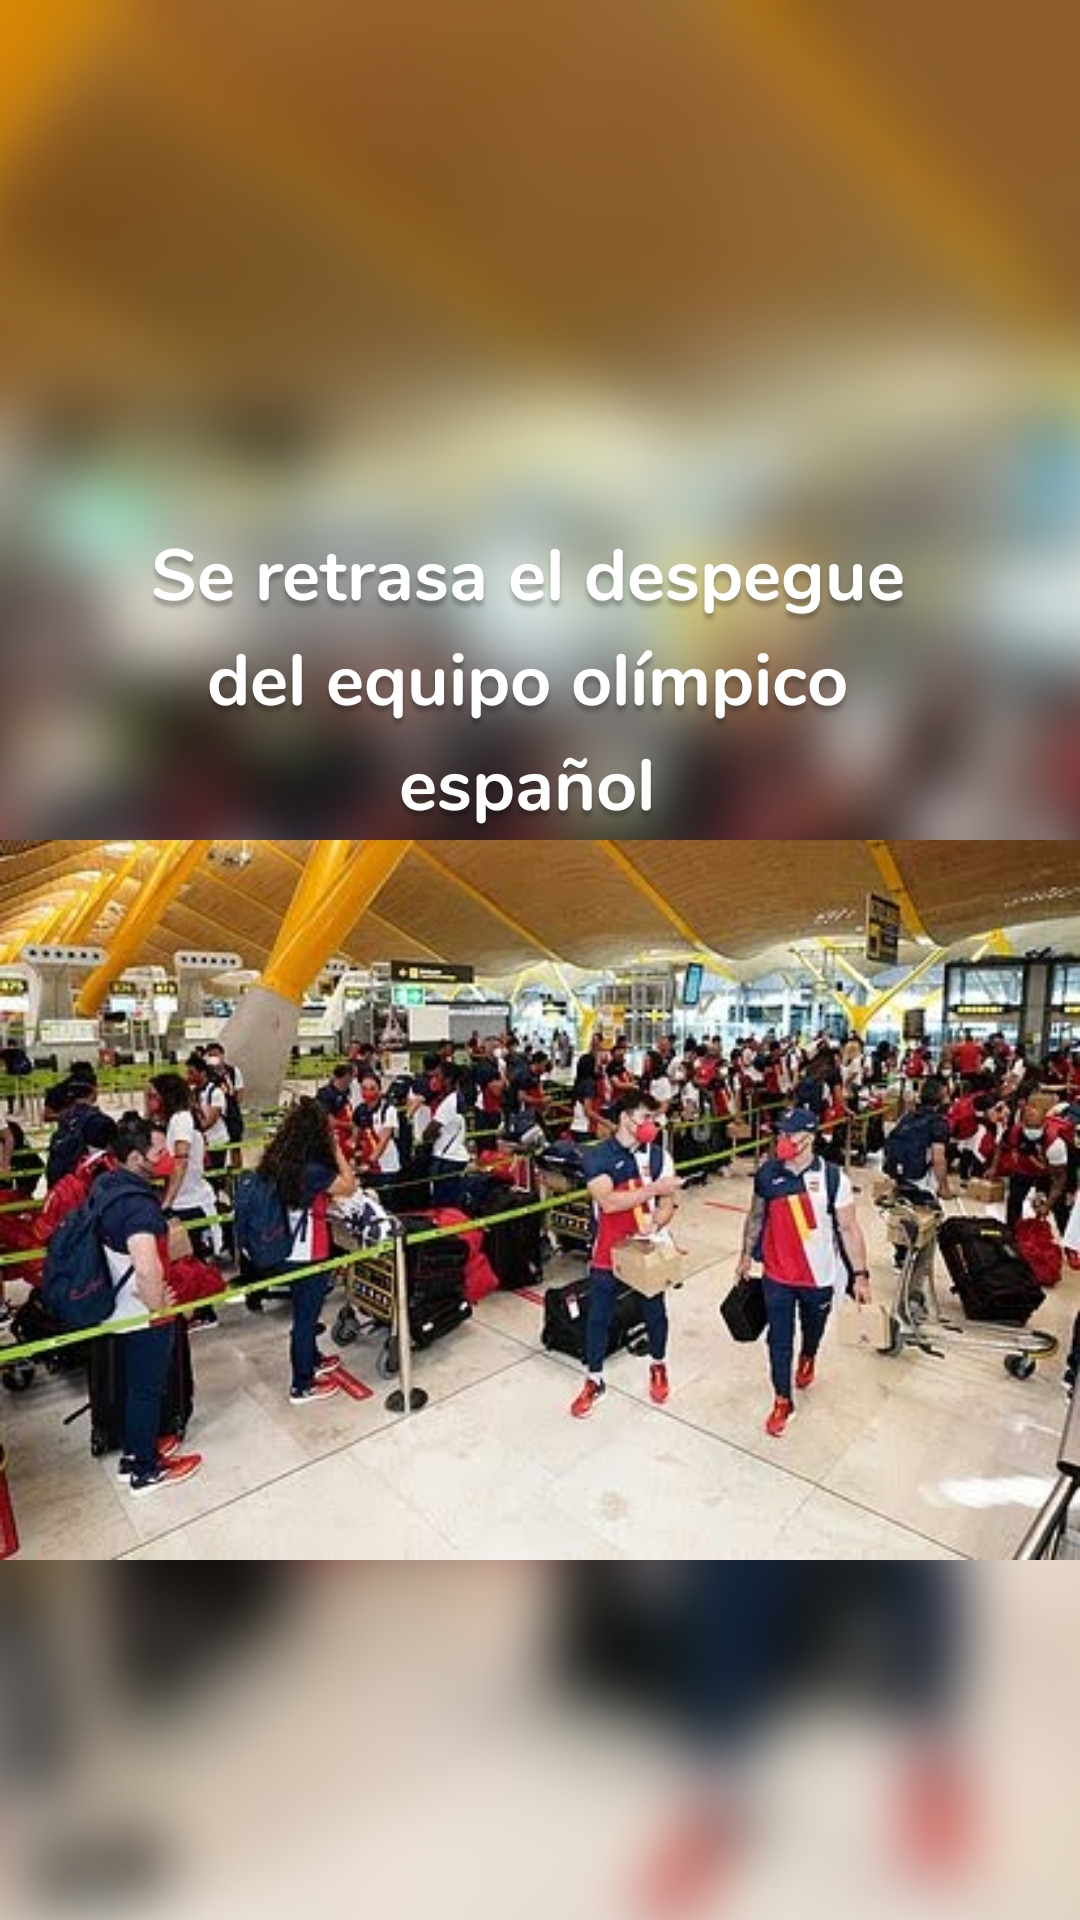 Se retrasa el despegue del equipo olímpico español